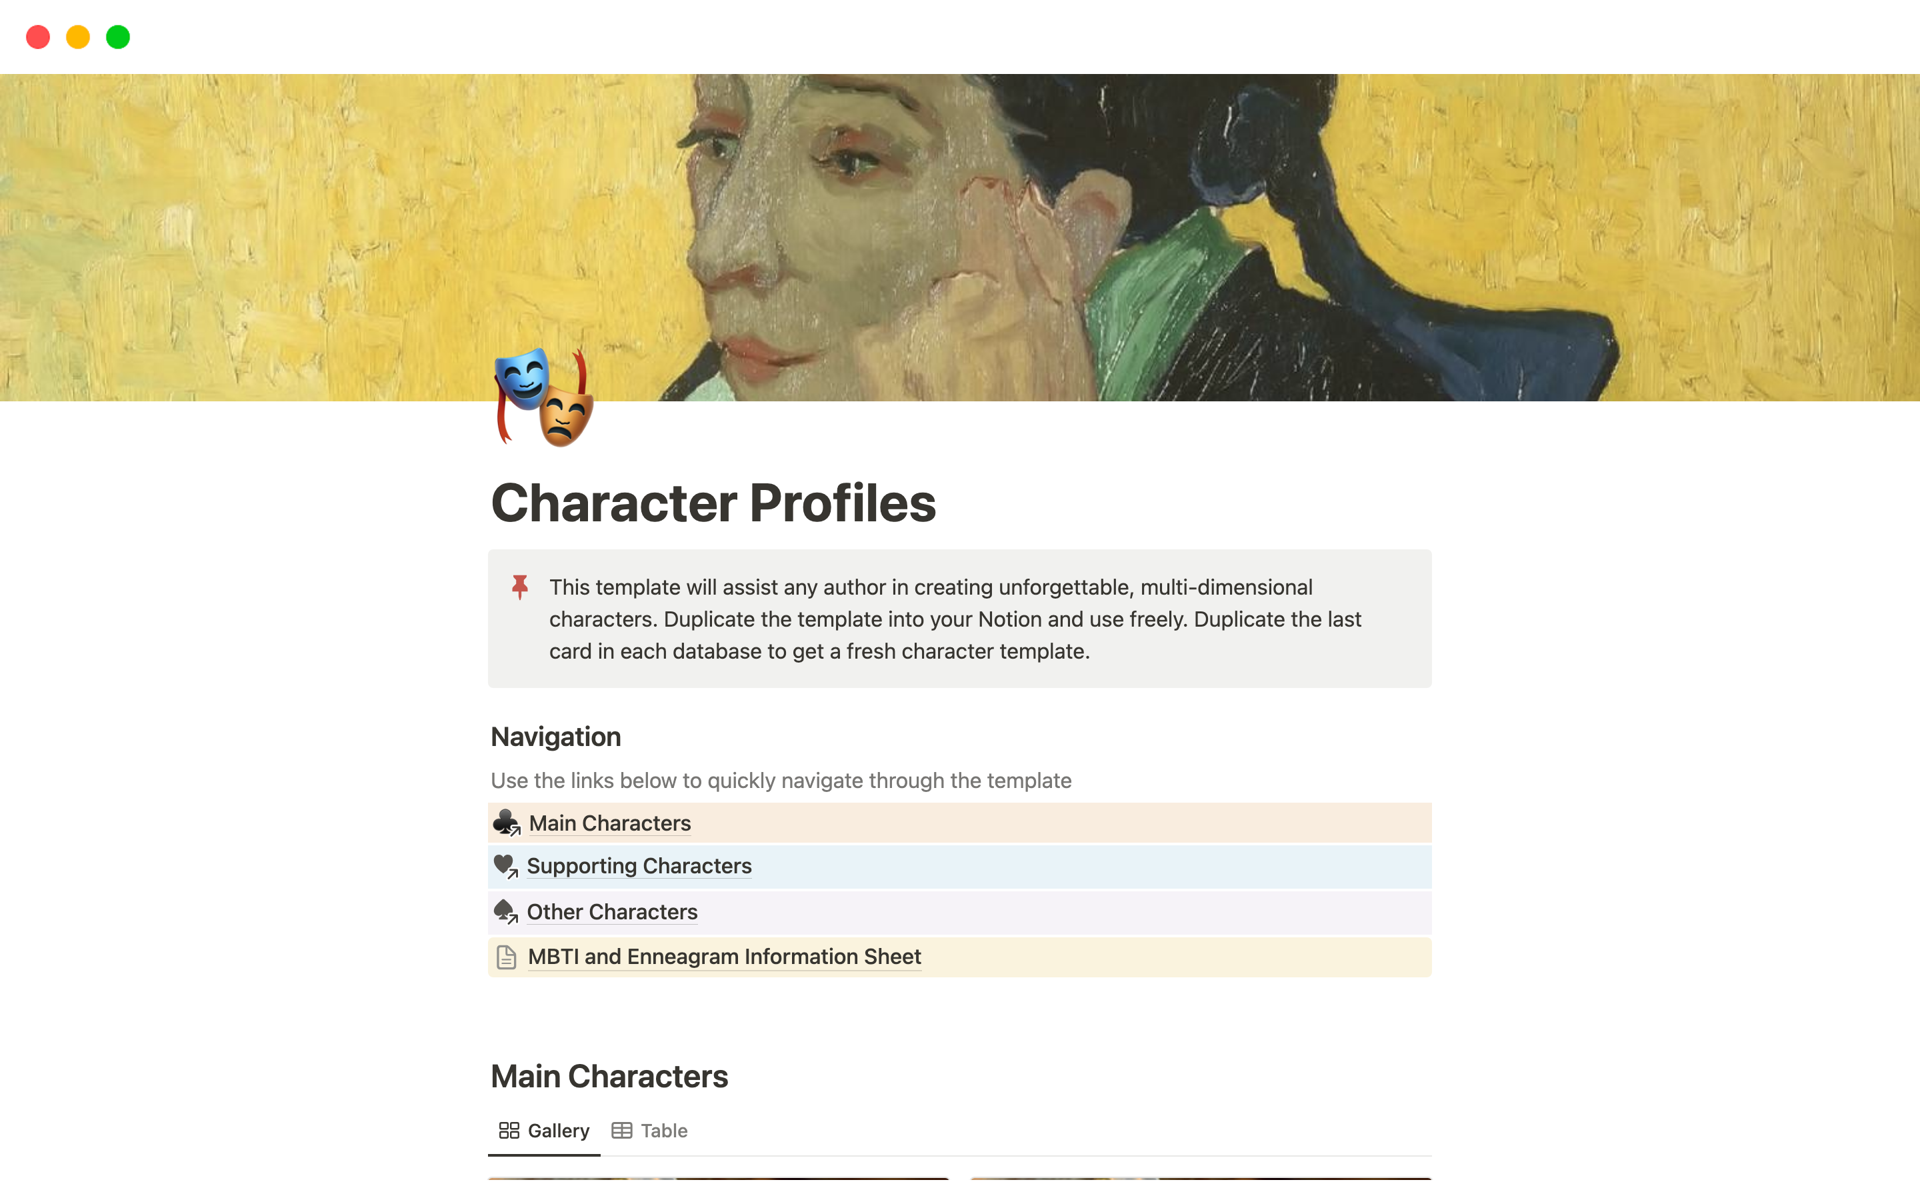 Aperçu du modèle de Character Profiles